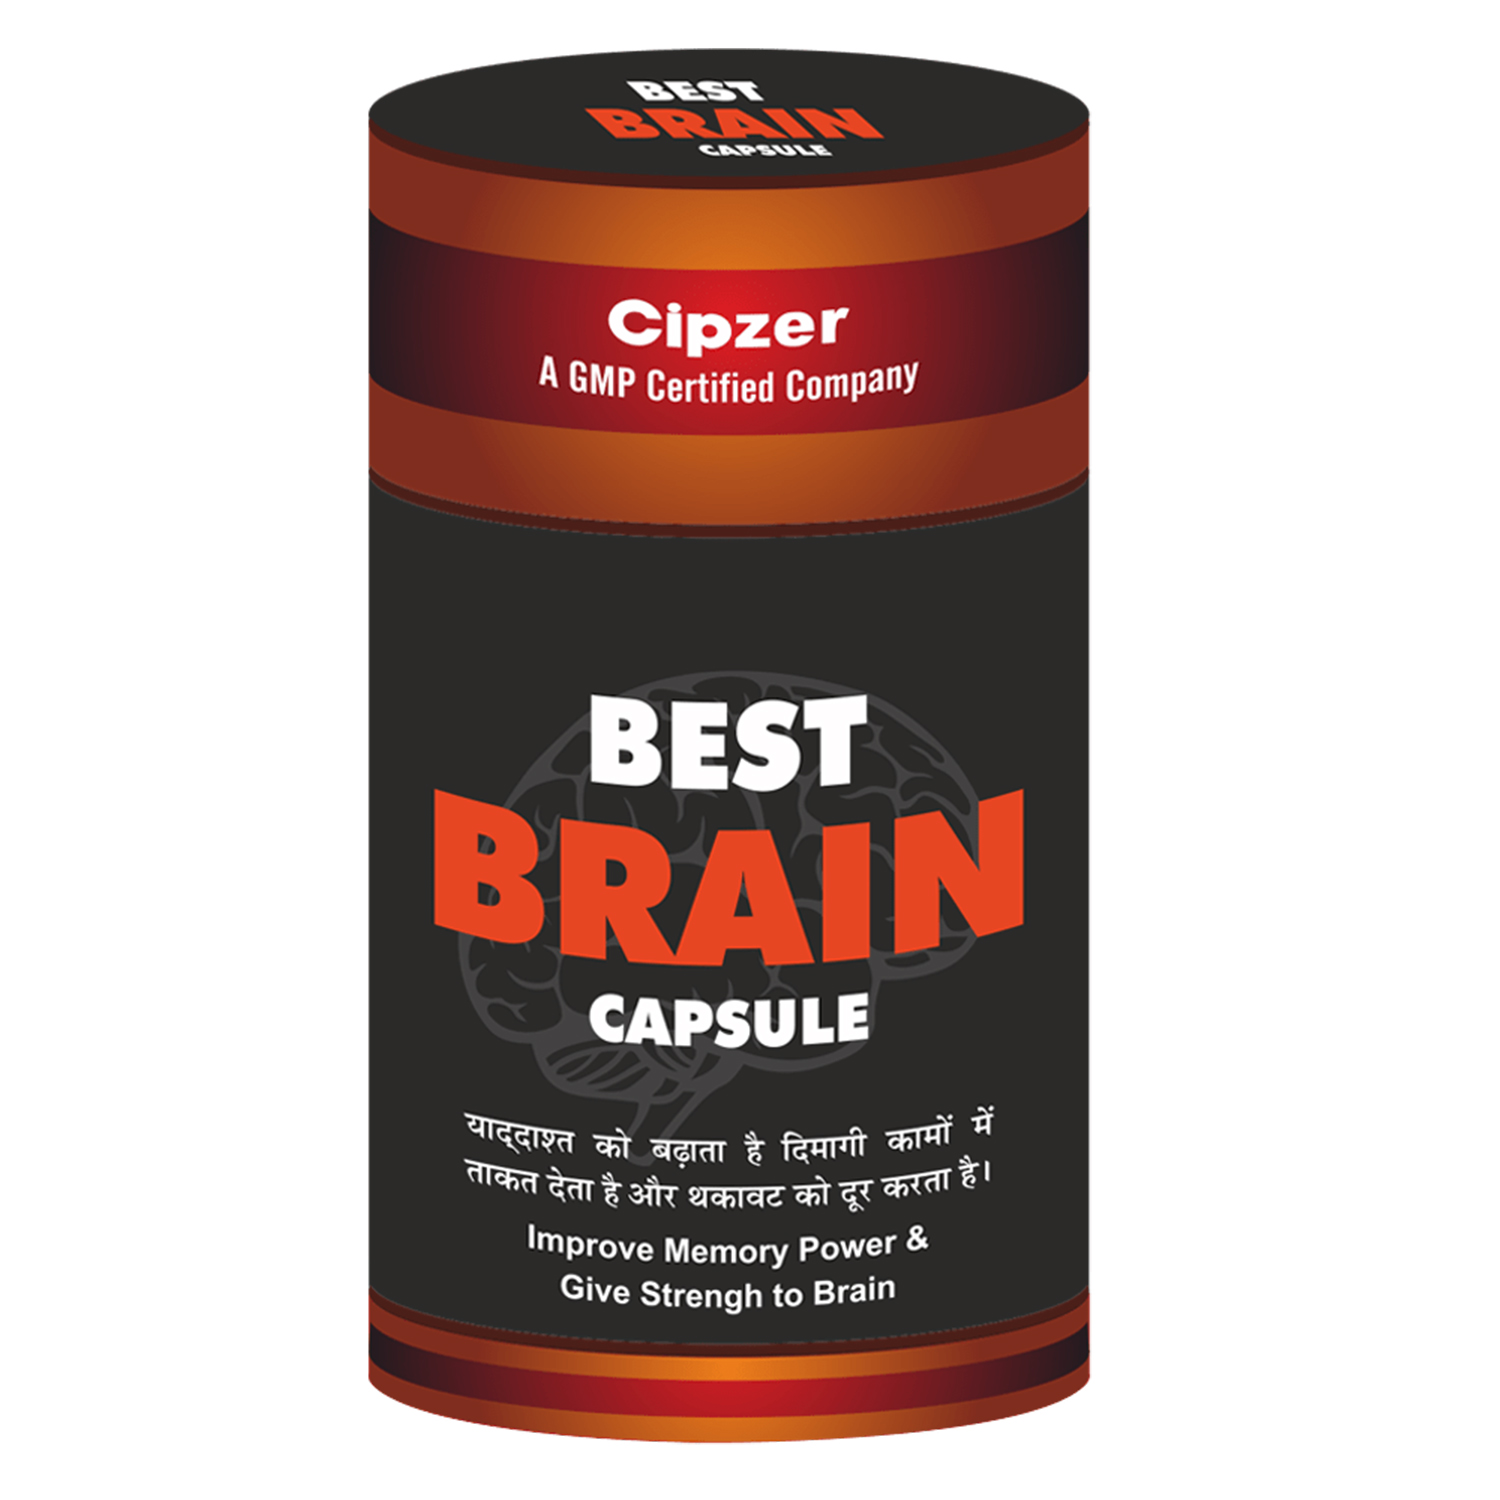 Buy Cipzer Best Brain Capsule at Best Price Online